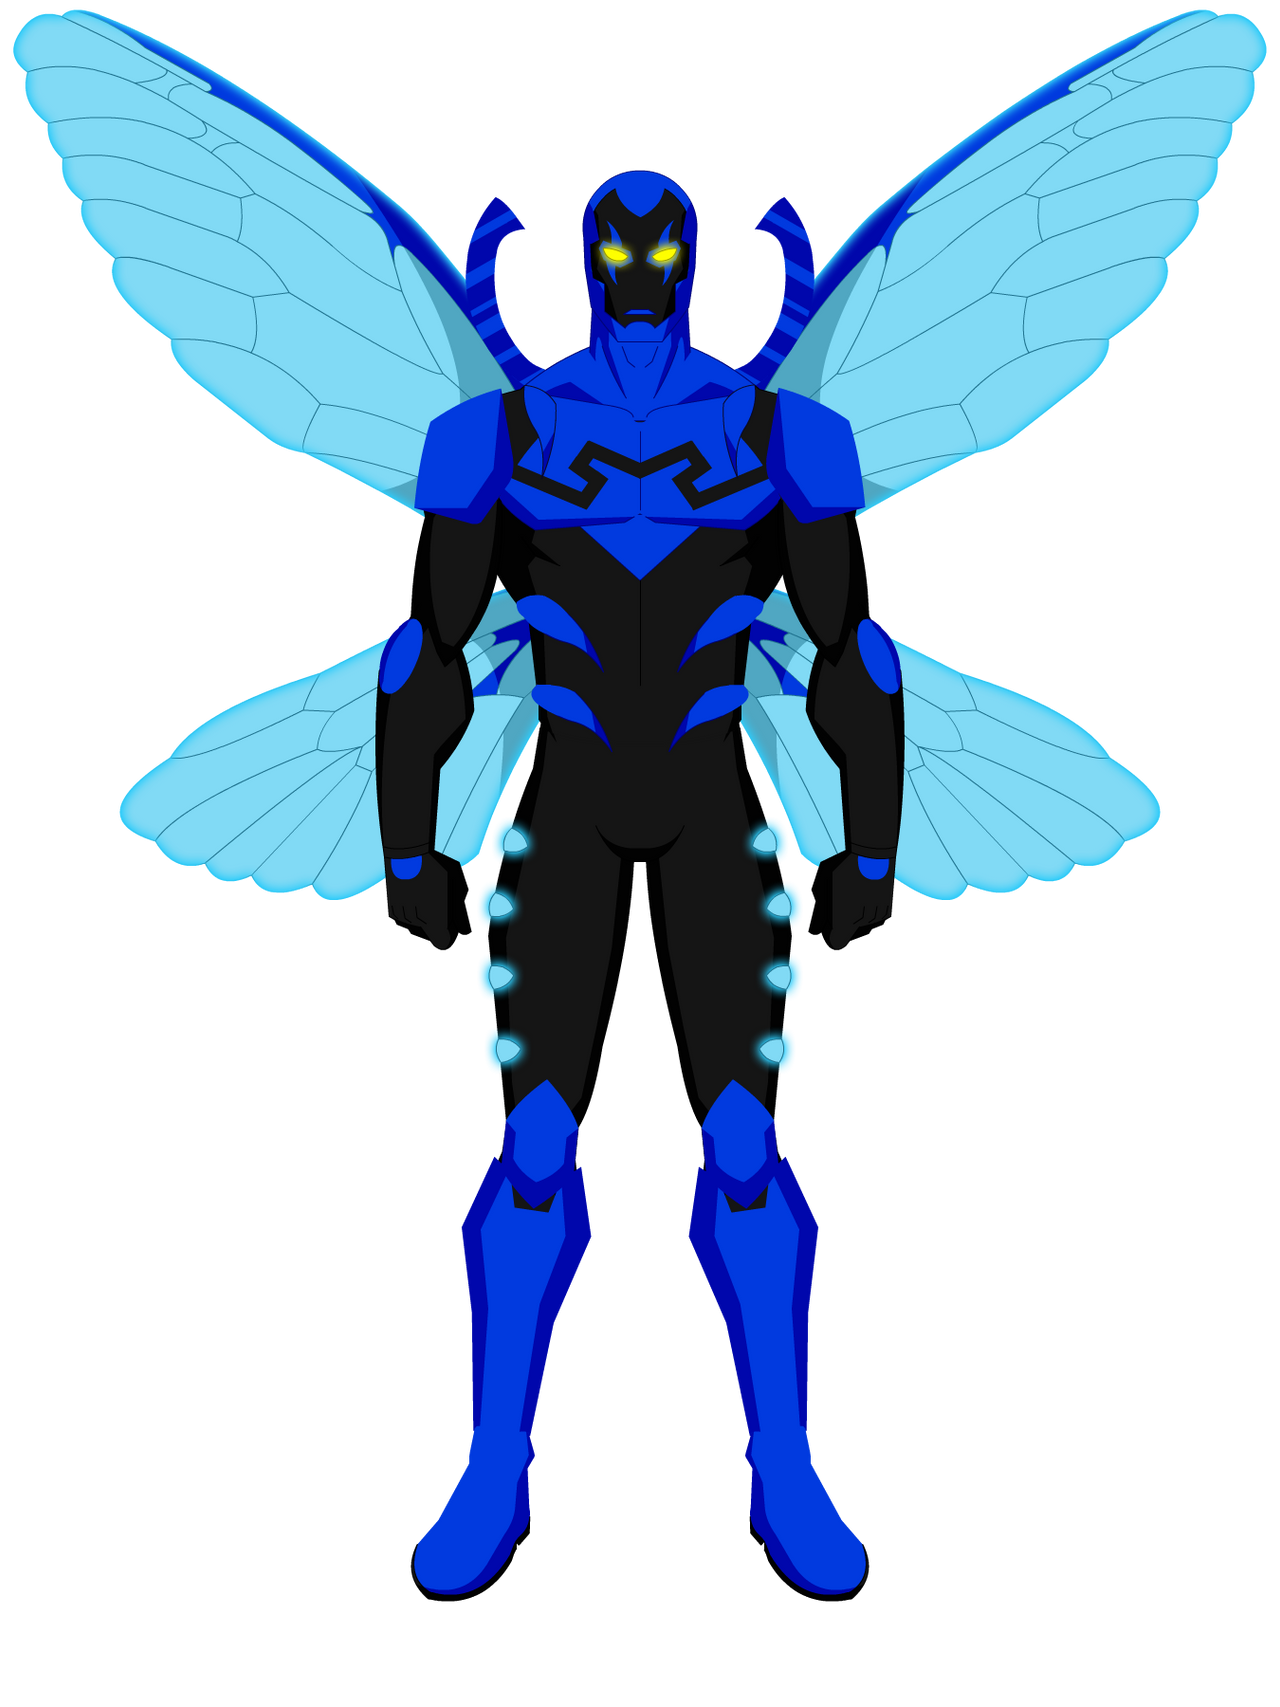 Blue Beetle by Traethedesigner on DeviantArt